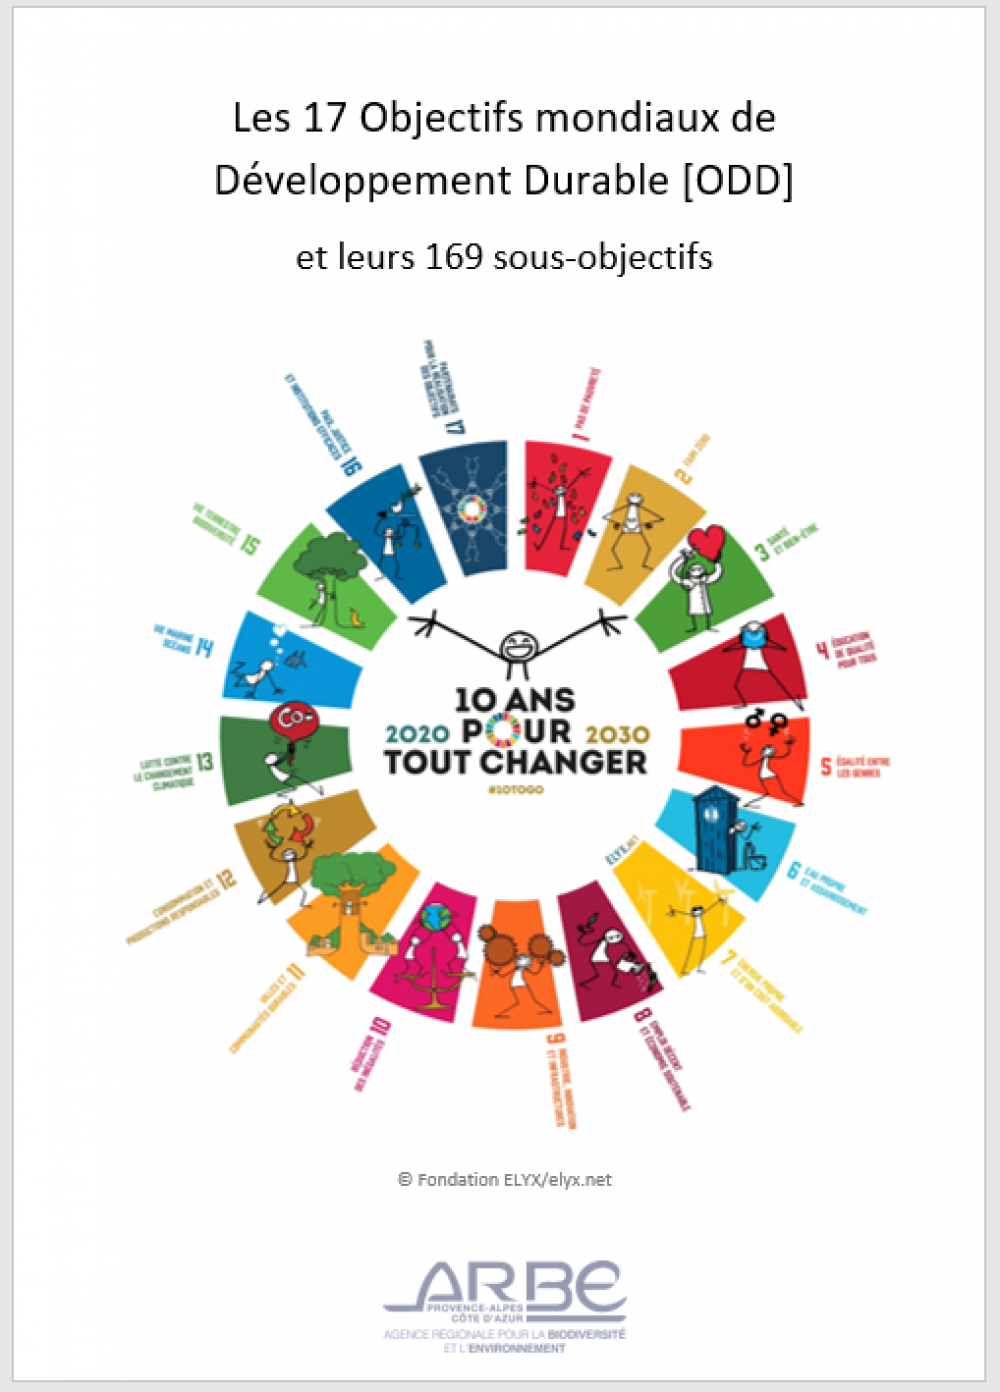 Livret de présentation des 17 Objectifs de Développement Durable (ODD) et des 169 sous-objectifs